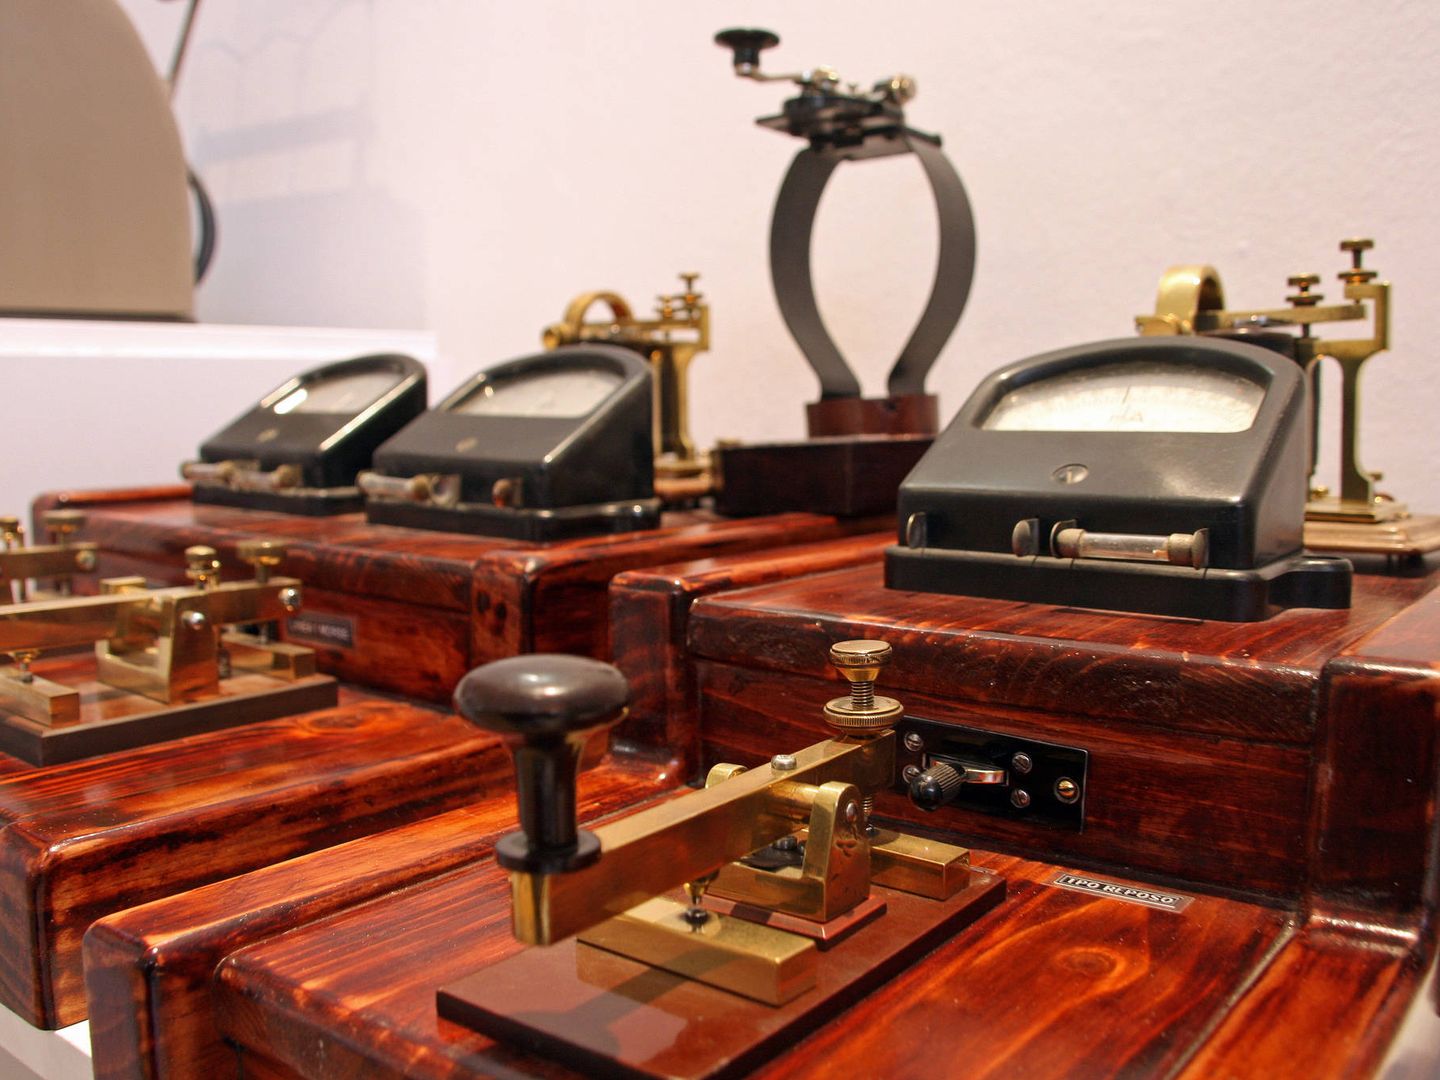 Además de teléfonos, el museo también tiene espacio para otras formas de telecomunicaciones, como los telégrafos. (Imagen: Toño Ramos (Patrimonio de Telefonía) | Flickr)